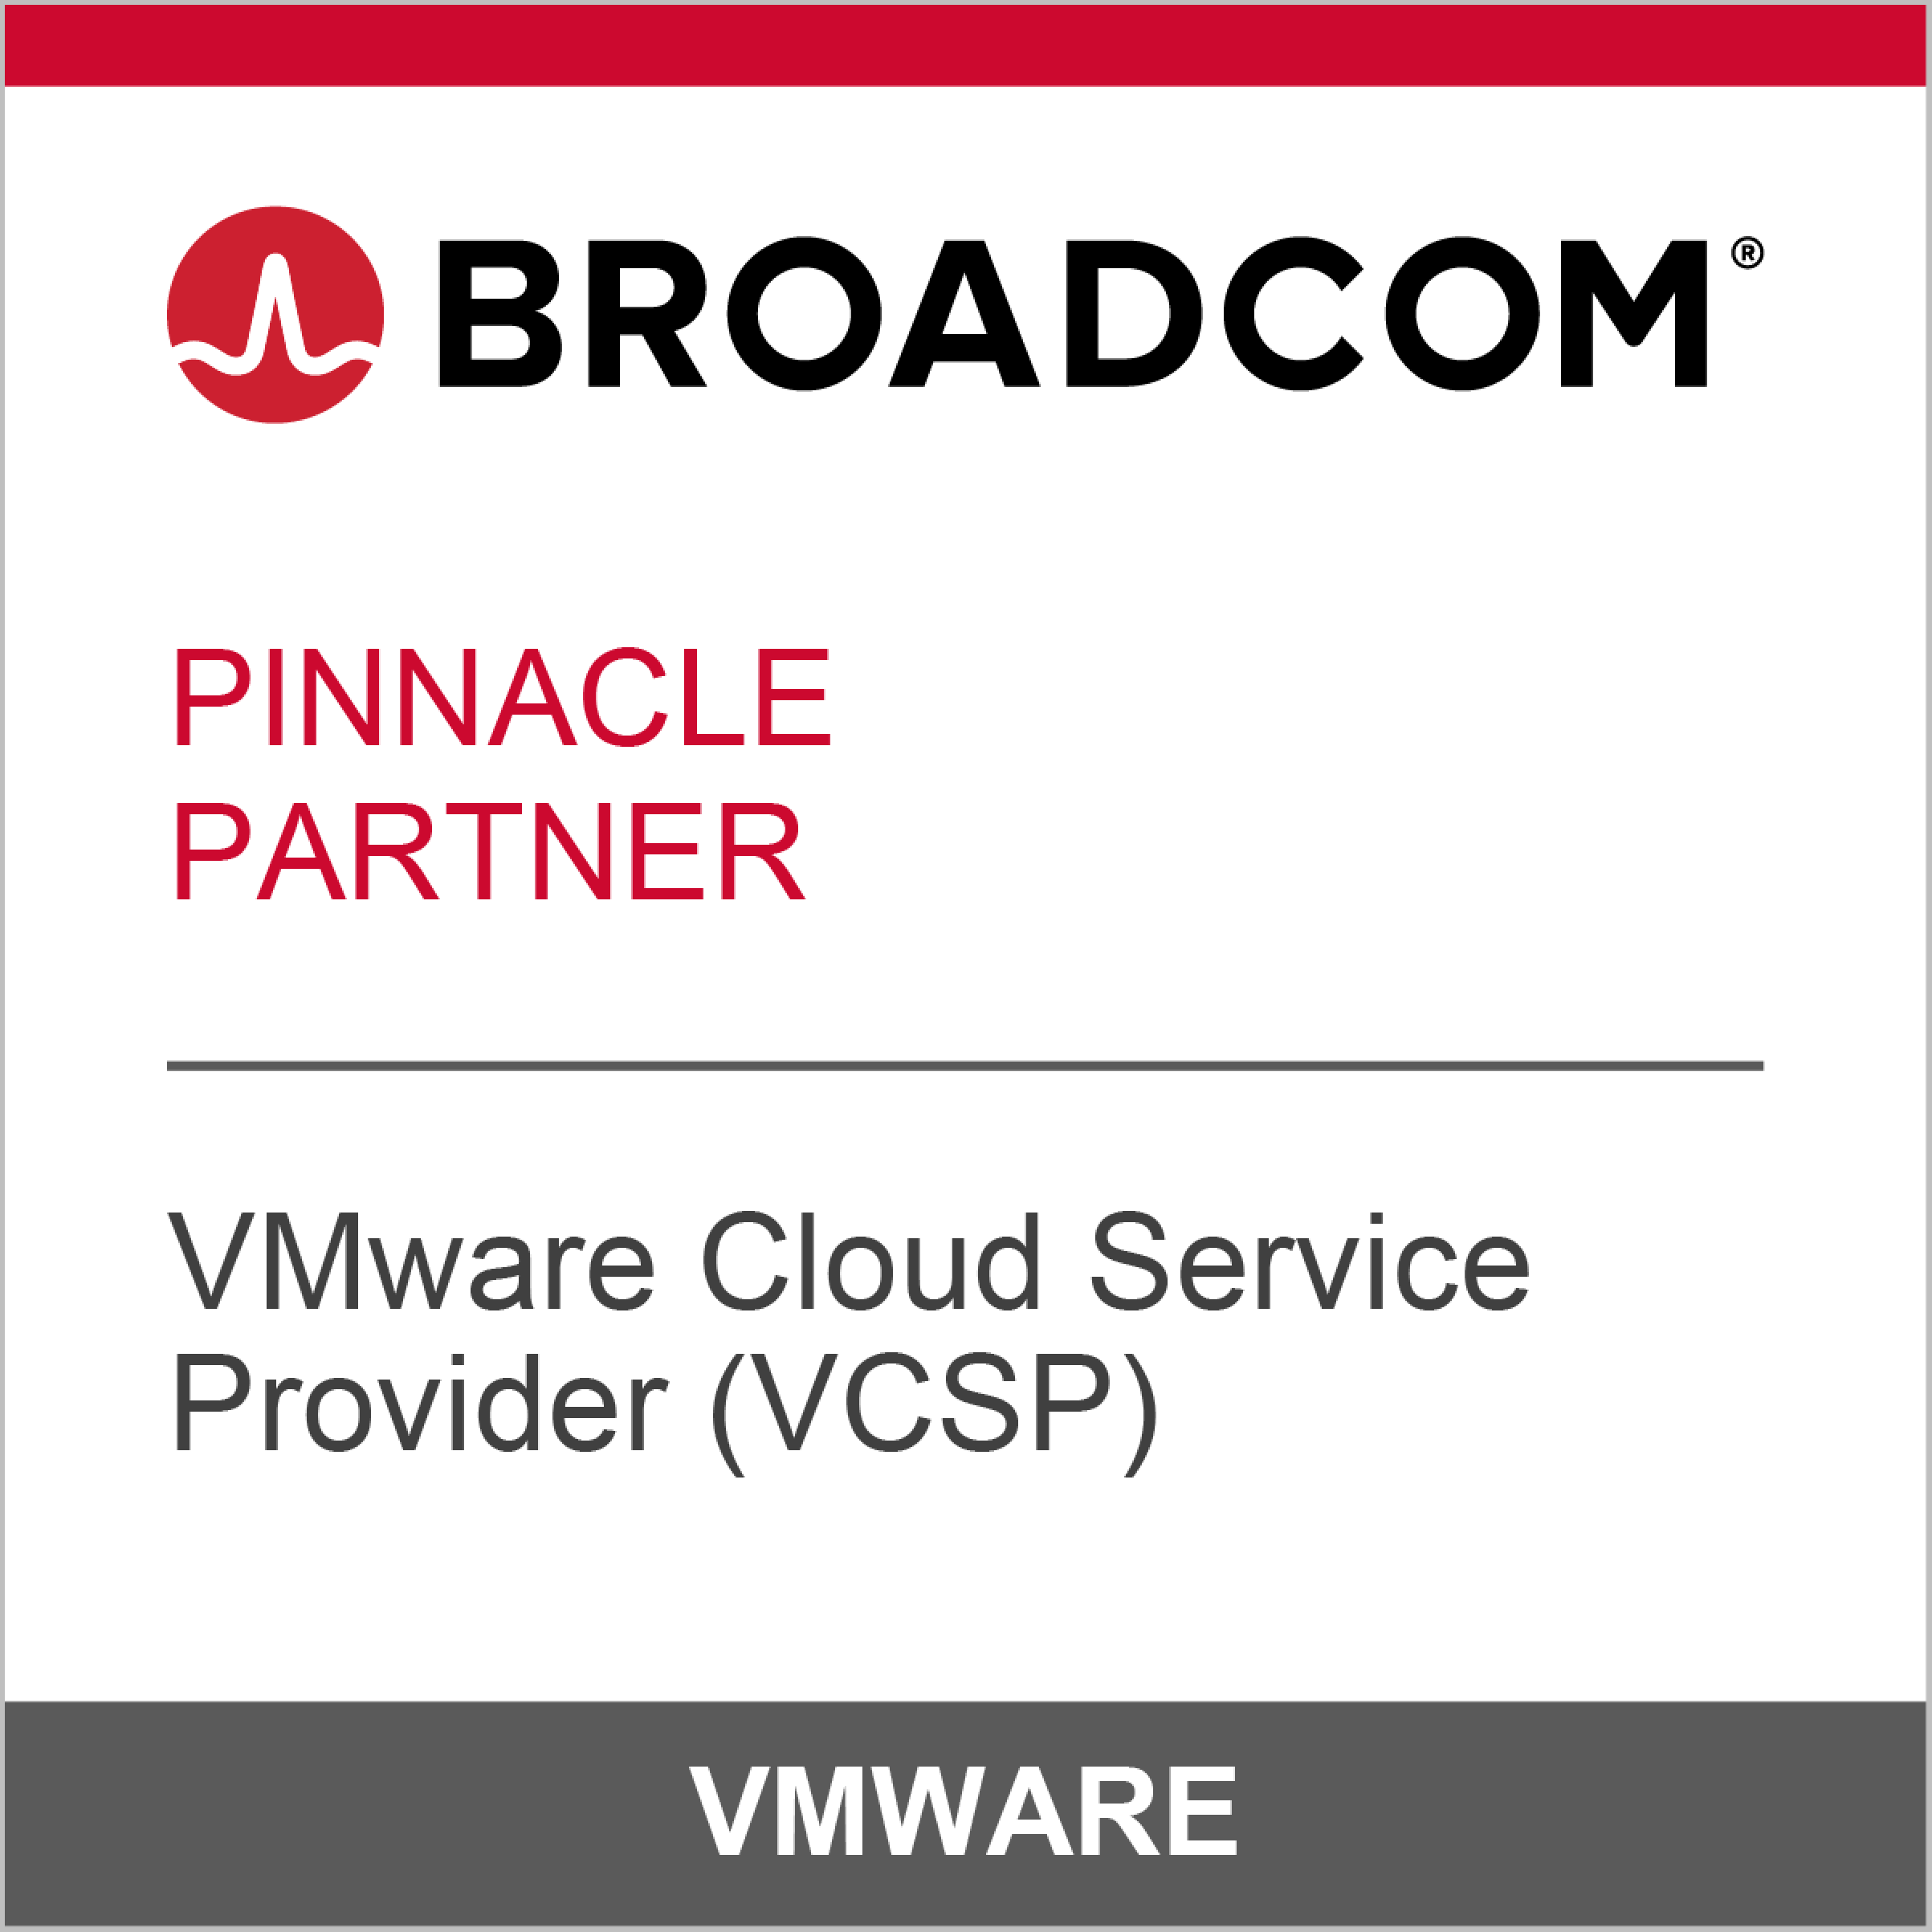 VMware Broadcom Pinnacle Partner